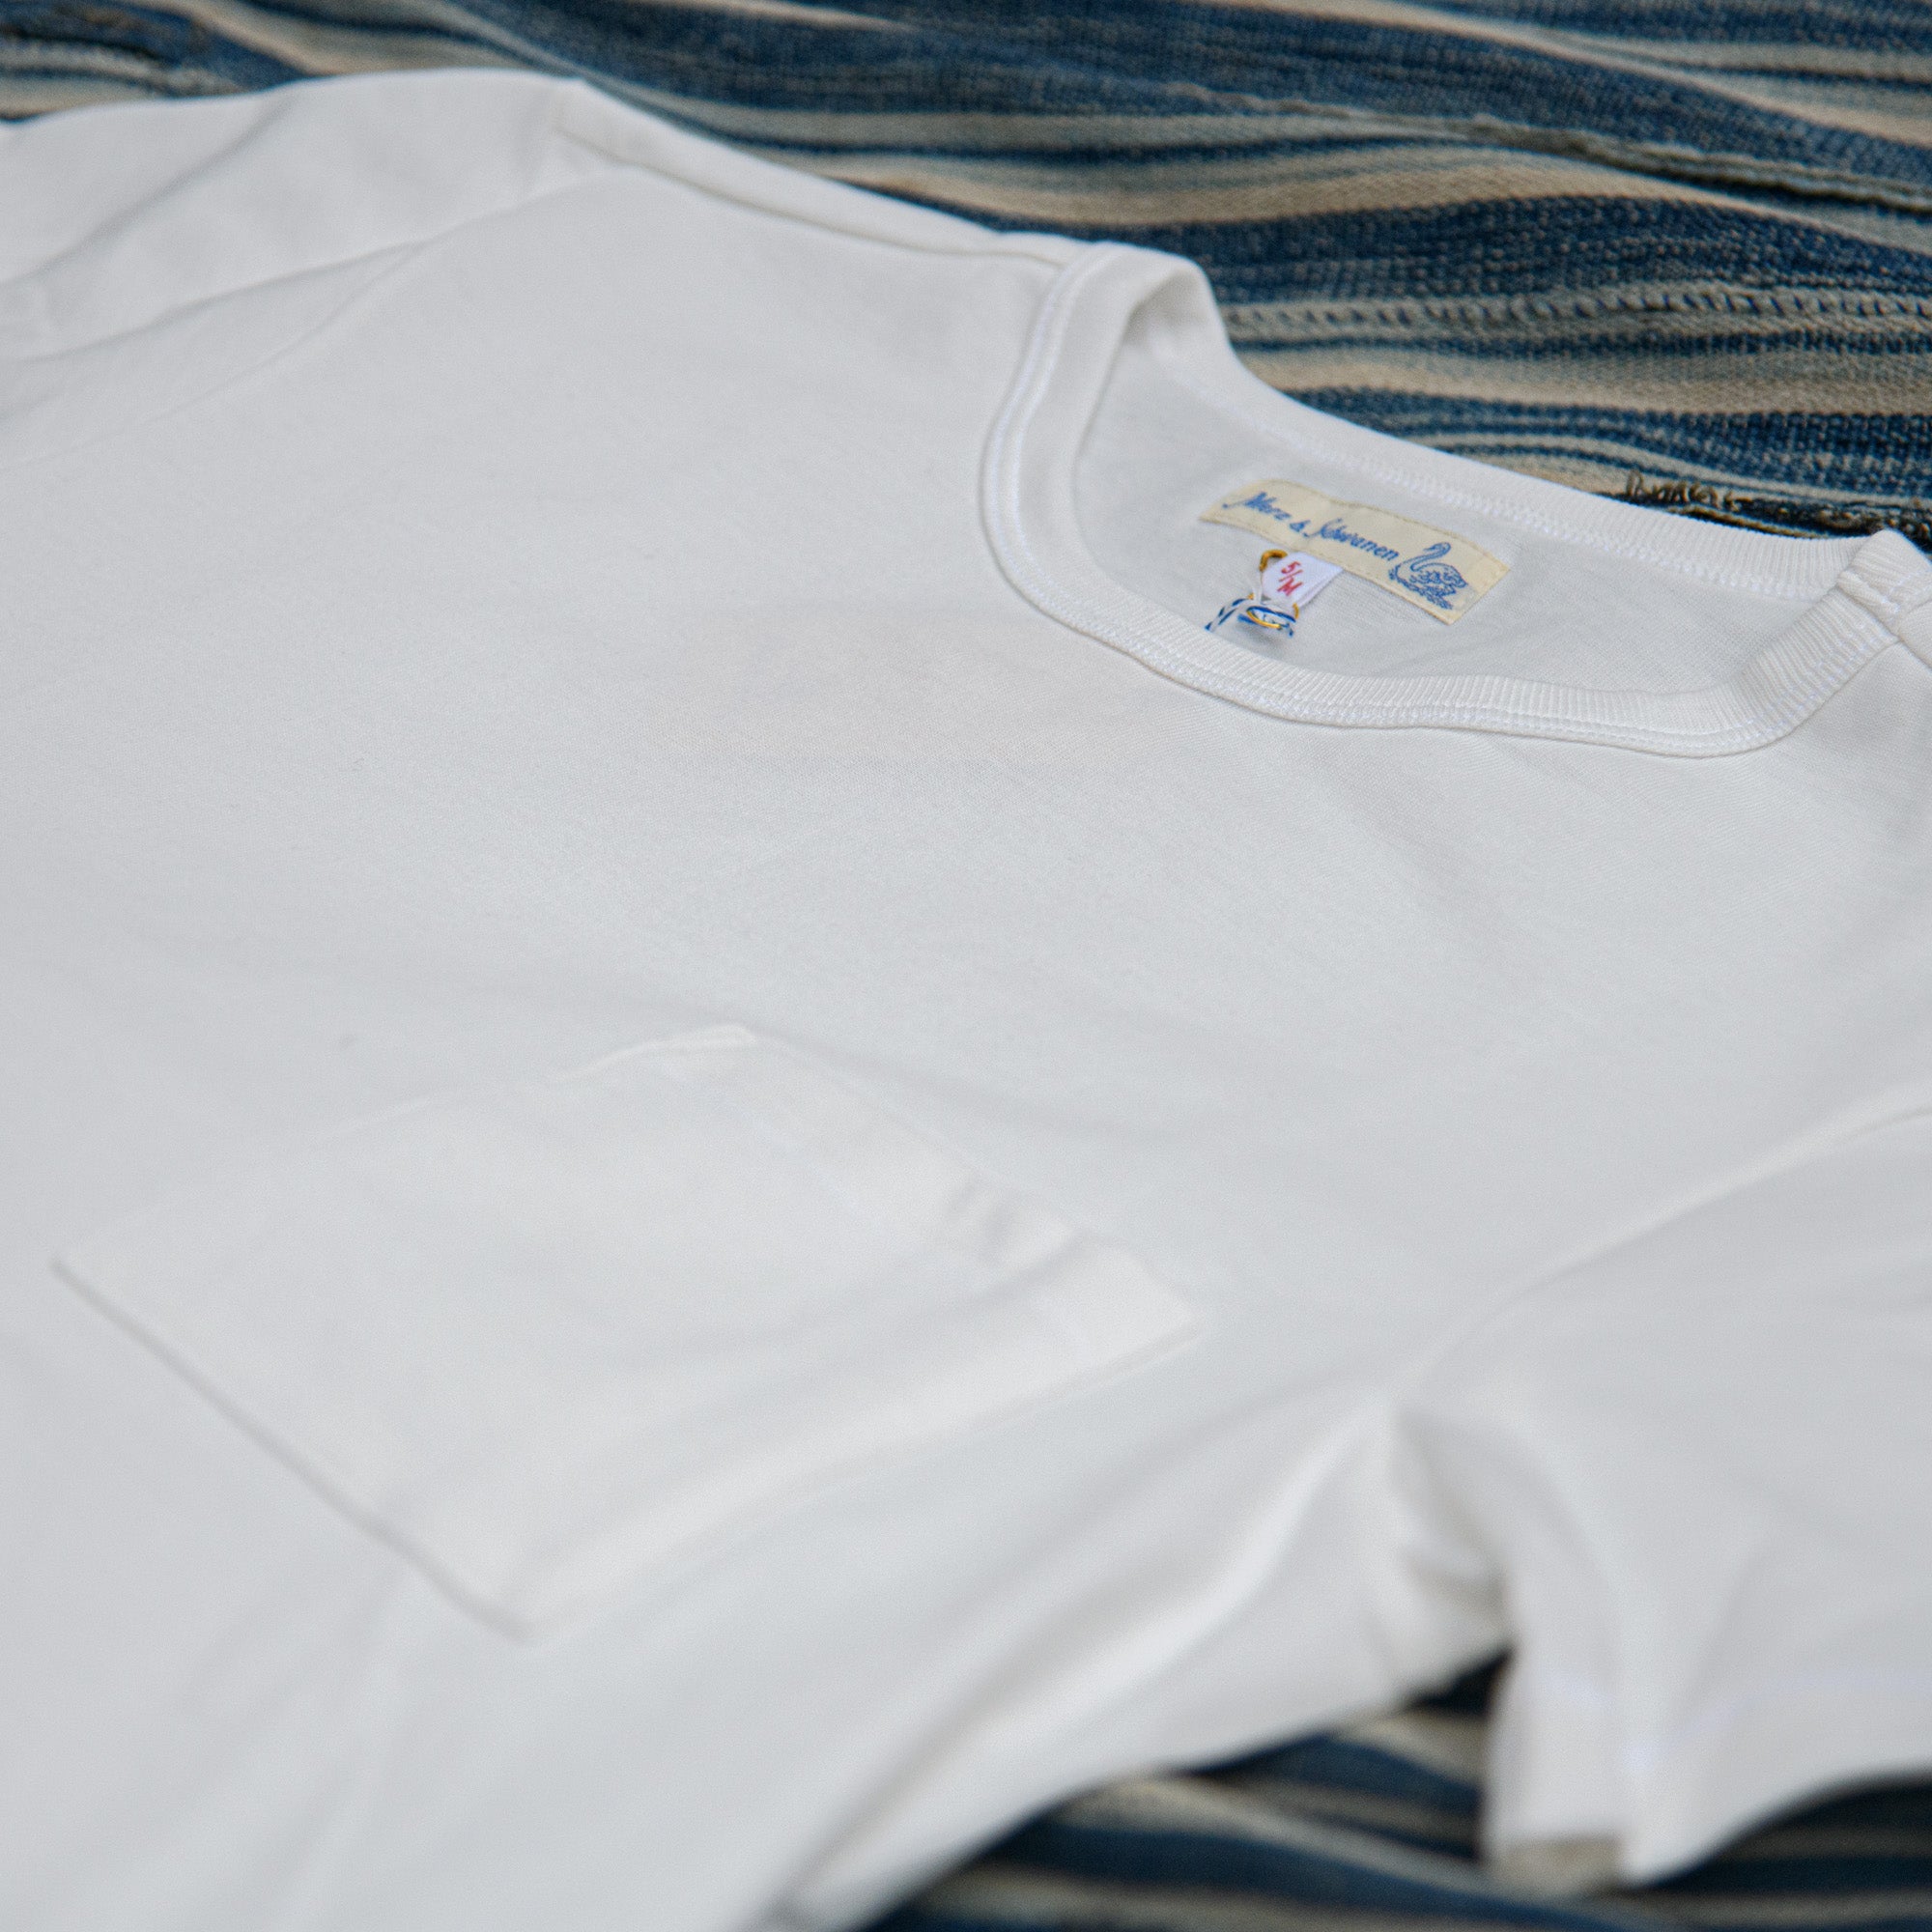 Store Exclusive (Europe) b 215 / White T-Shirt Limited Schwanen Edition Merz – Pocket